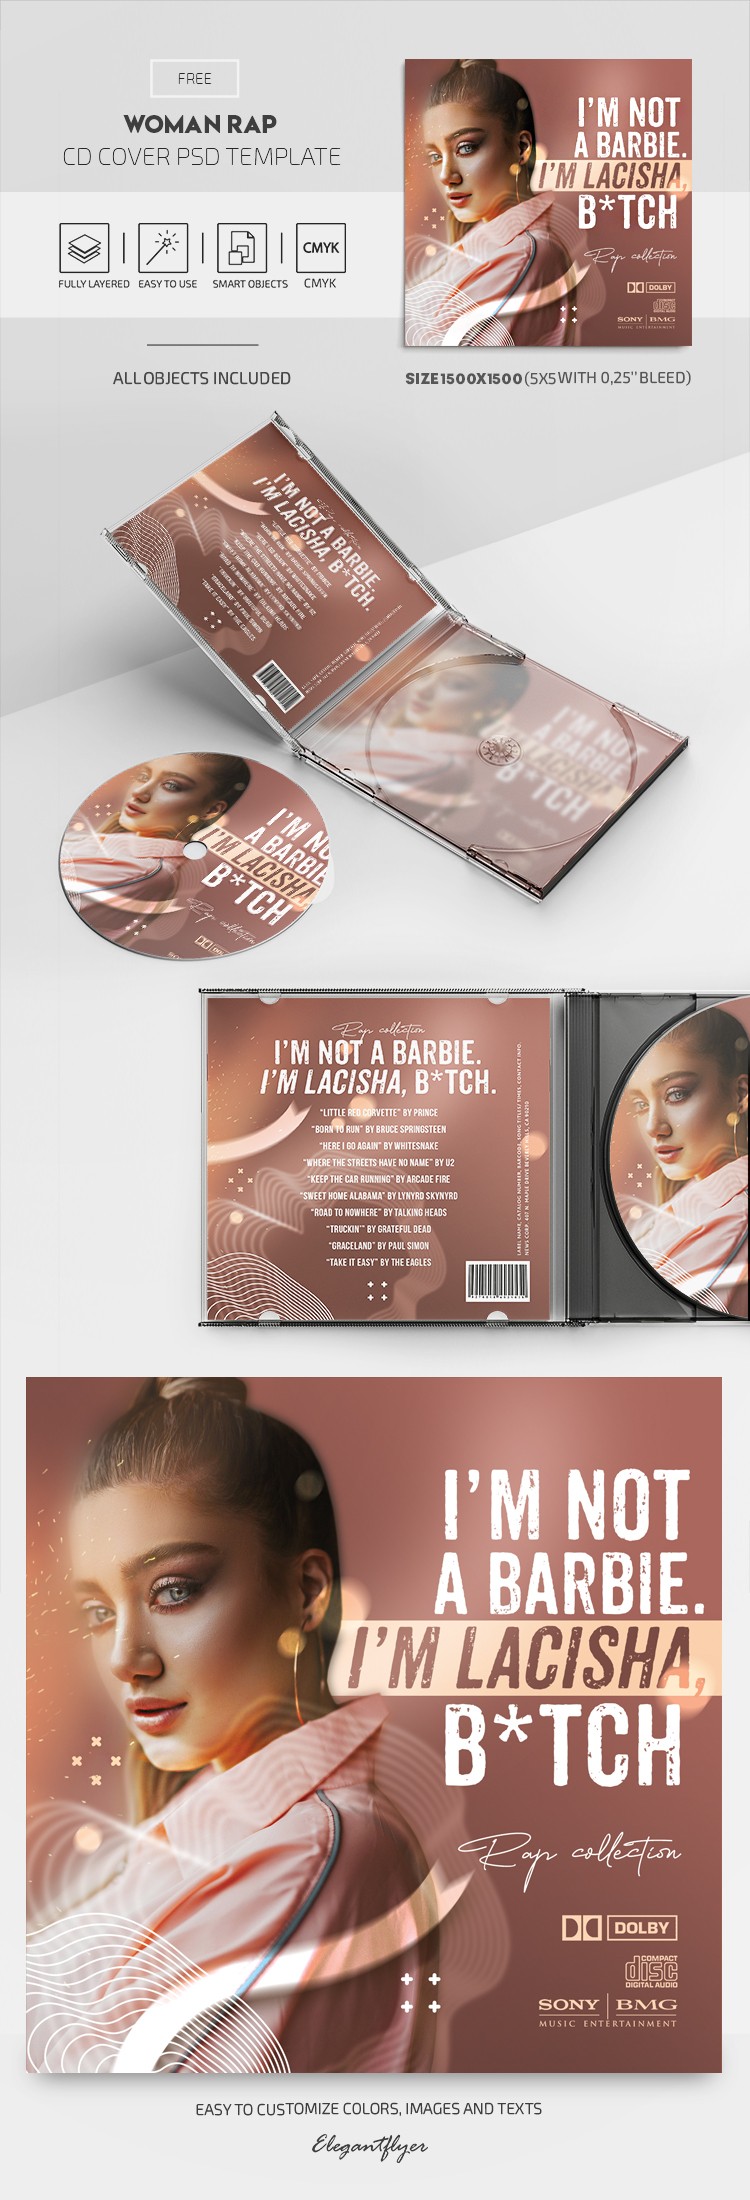 Copertina del CD di rap della donna. by ElegantFlyer